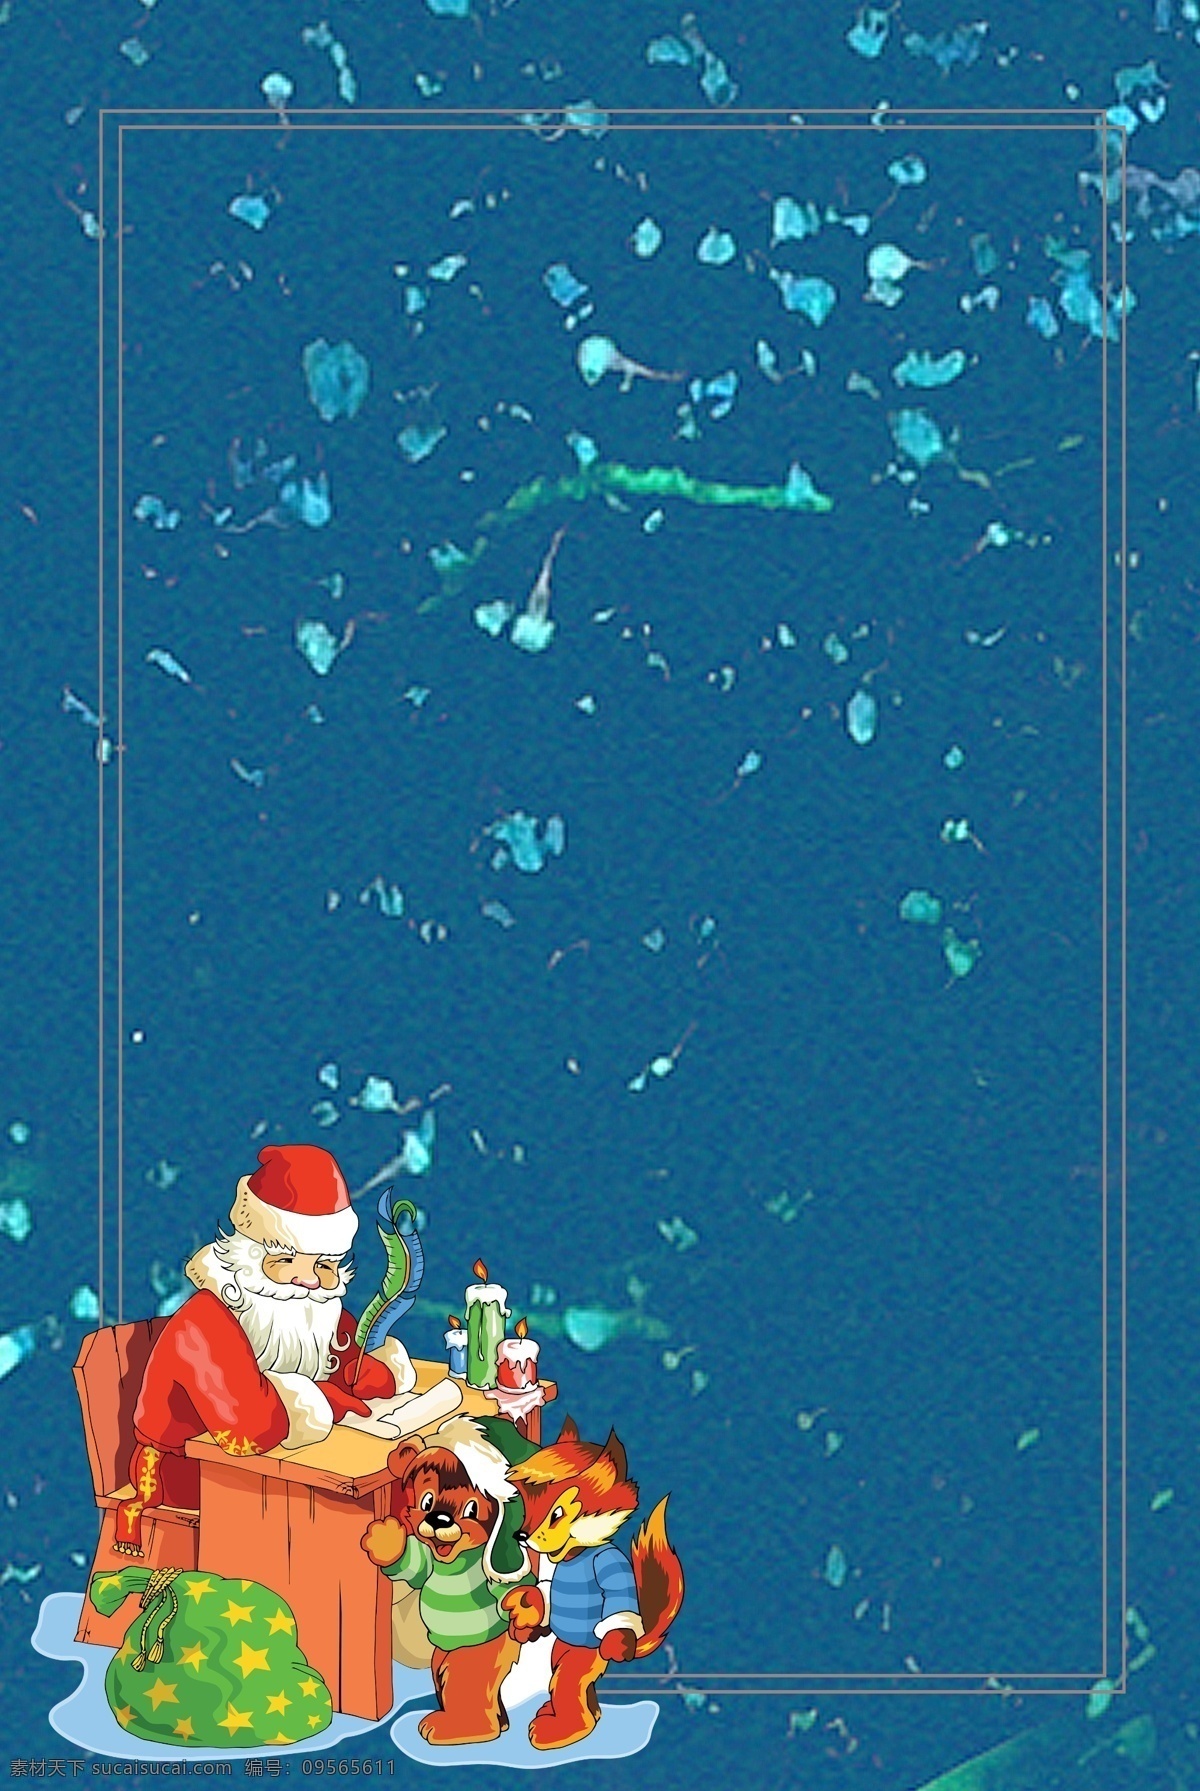 冬季 卡通 手绘 节气 圣诞 背景 图 文艺 清新 雪天 圣诞节 广告 背景图 圣诞老人 唯美